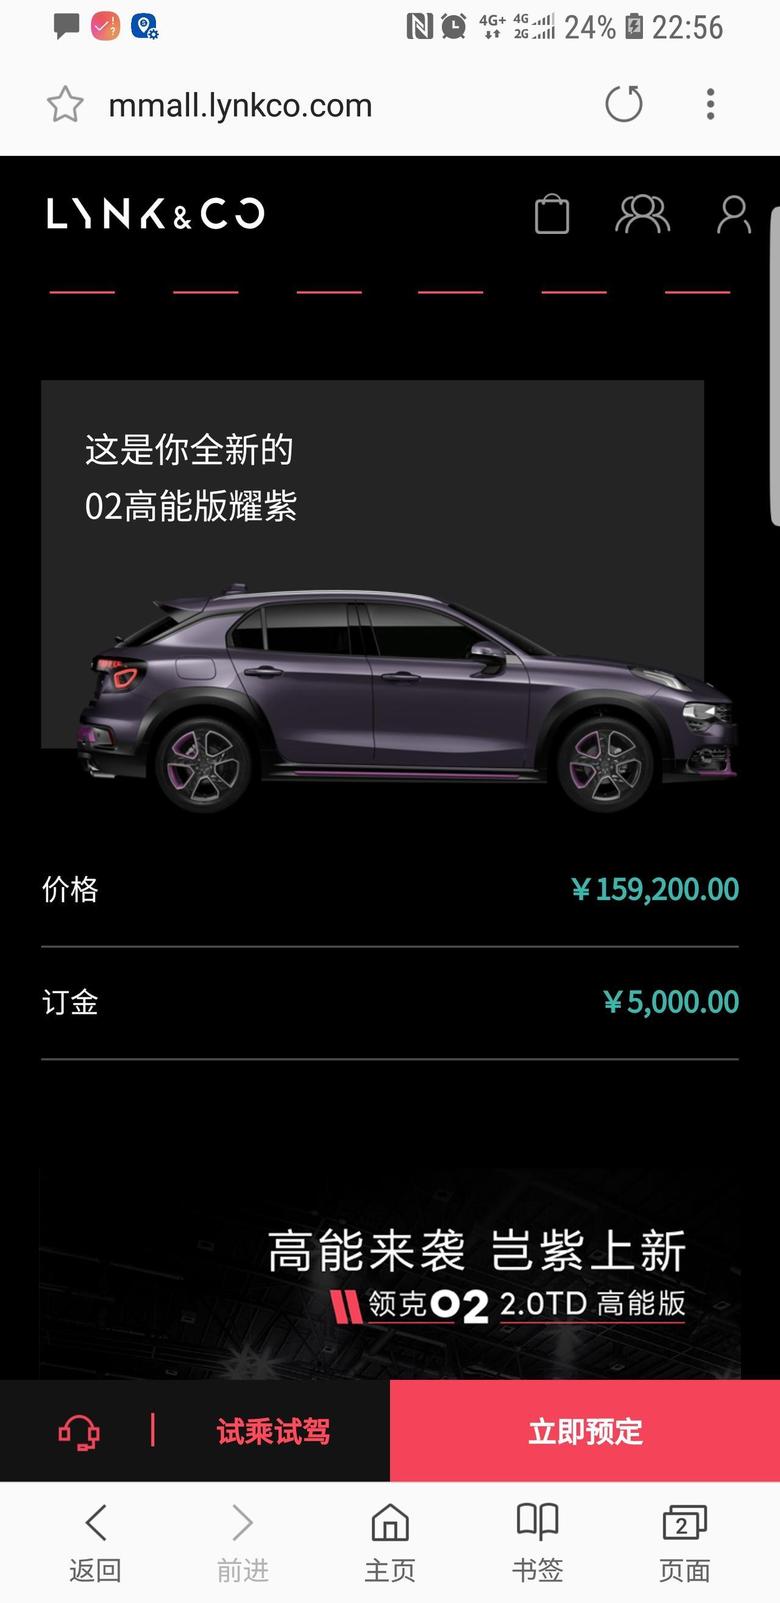 领克02 为什么在官网配车显示高能版耀pro只有15万9售价，而指导价16万88